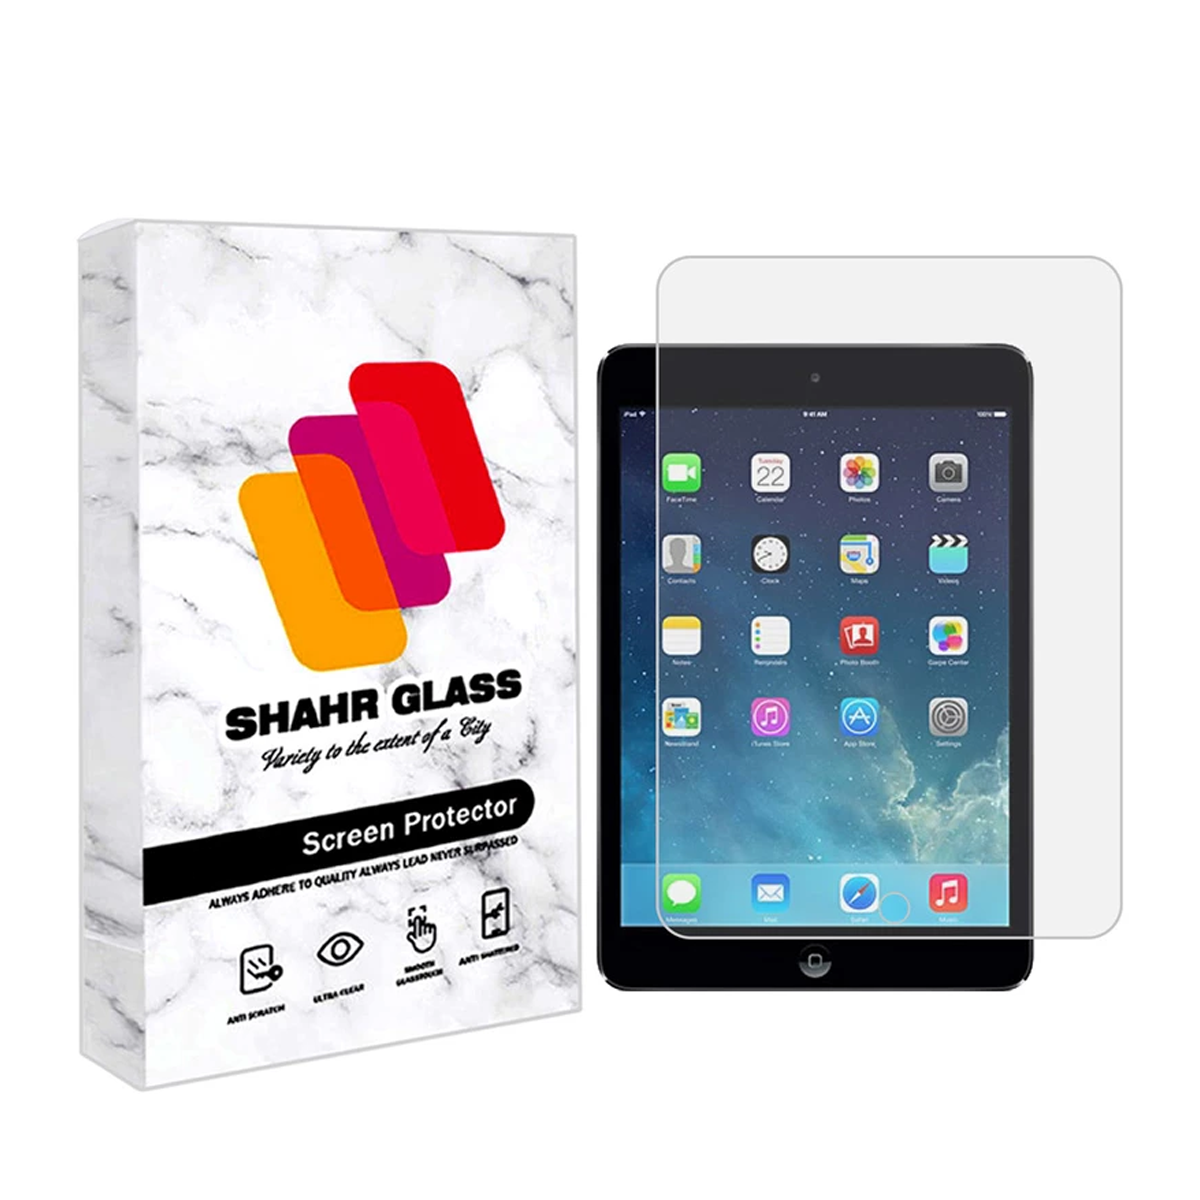 گلس تبلت اپل iPad Mini 2020 شهر گلس مدل TS1SHA-بی رنگ شفاف